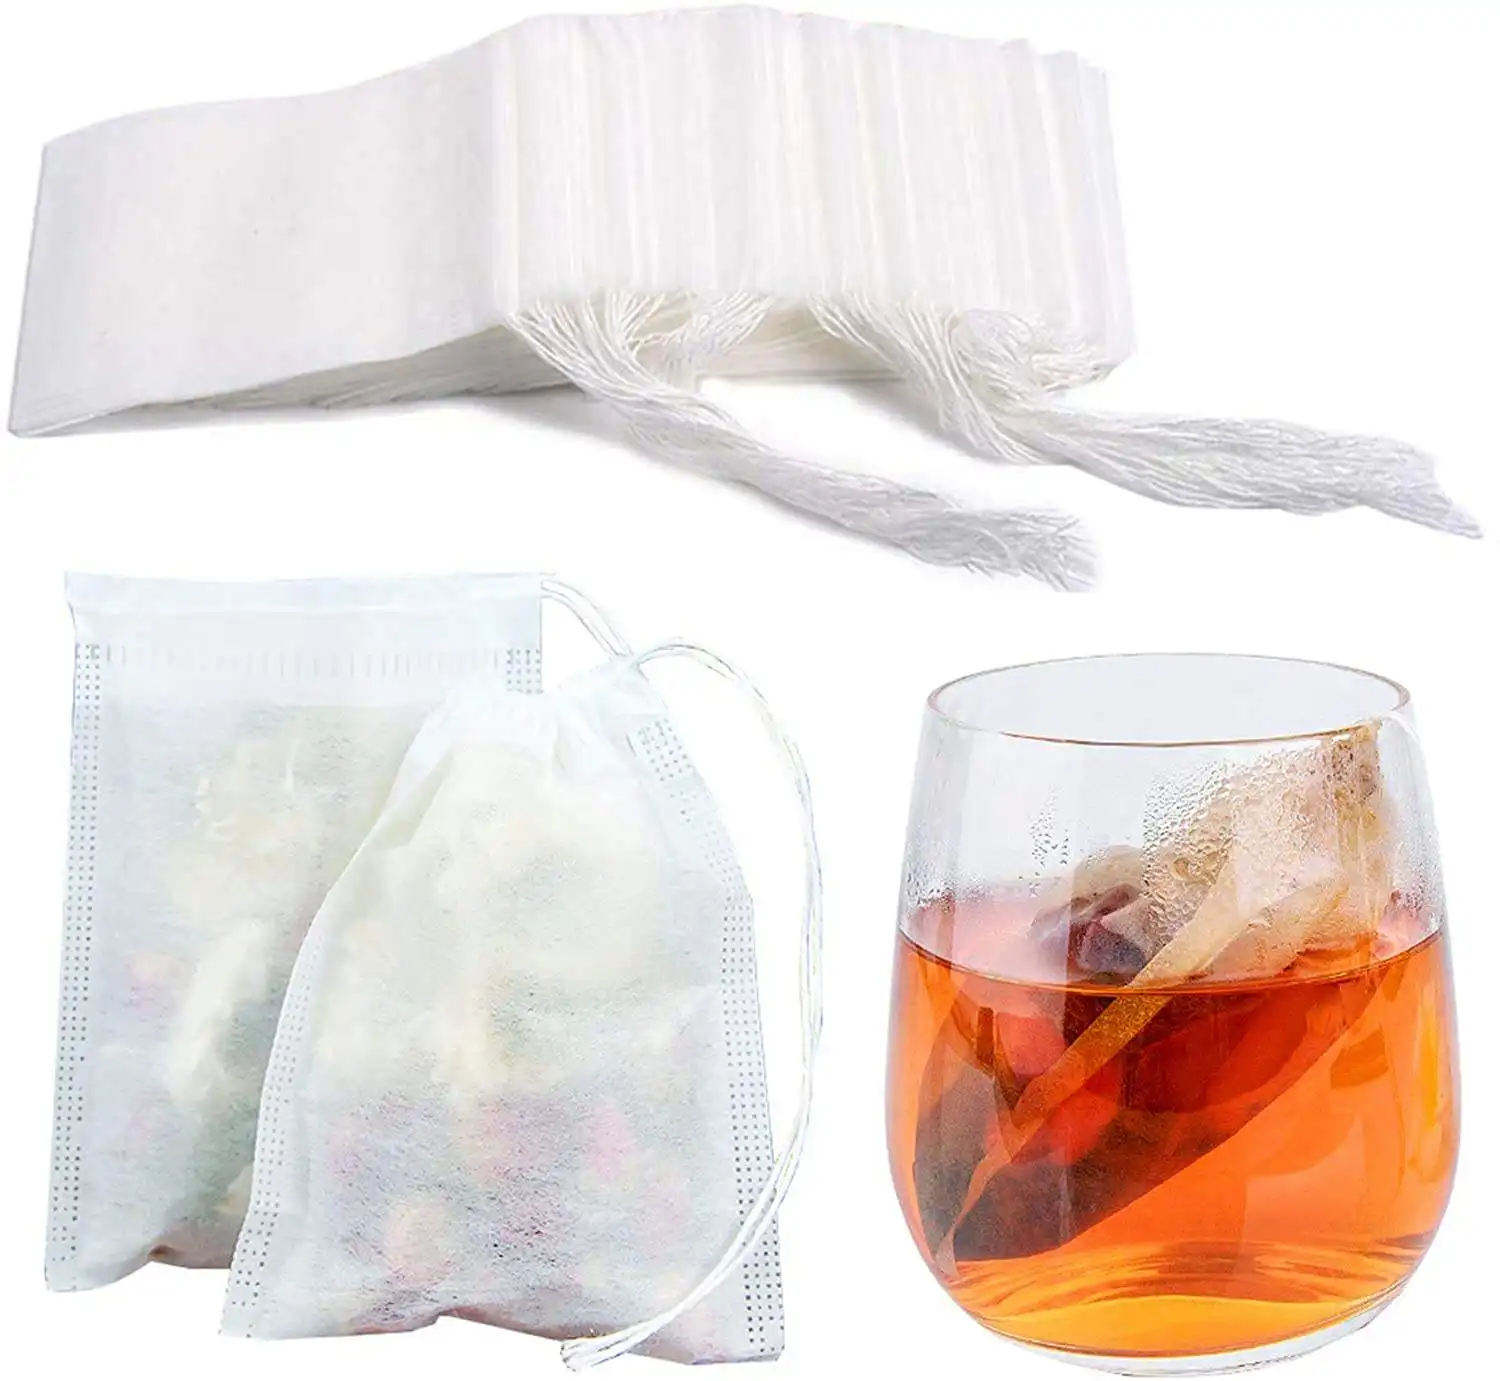 स्टॉक बायोडिग्रेडेबल चाय बैग के साथ स्टॉक बायोडिग्रेडेबल चाय बैग में ईको लकड़ी के लुगदी कागज फिल्टर चाय की थैलियों